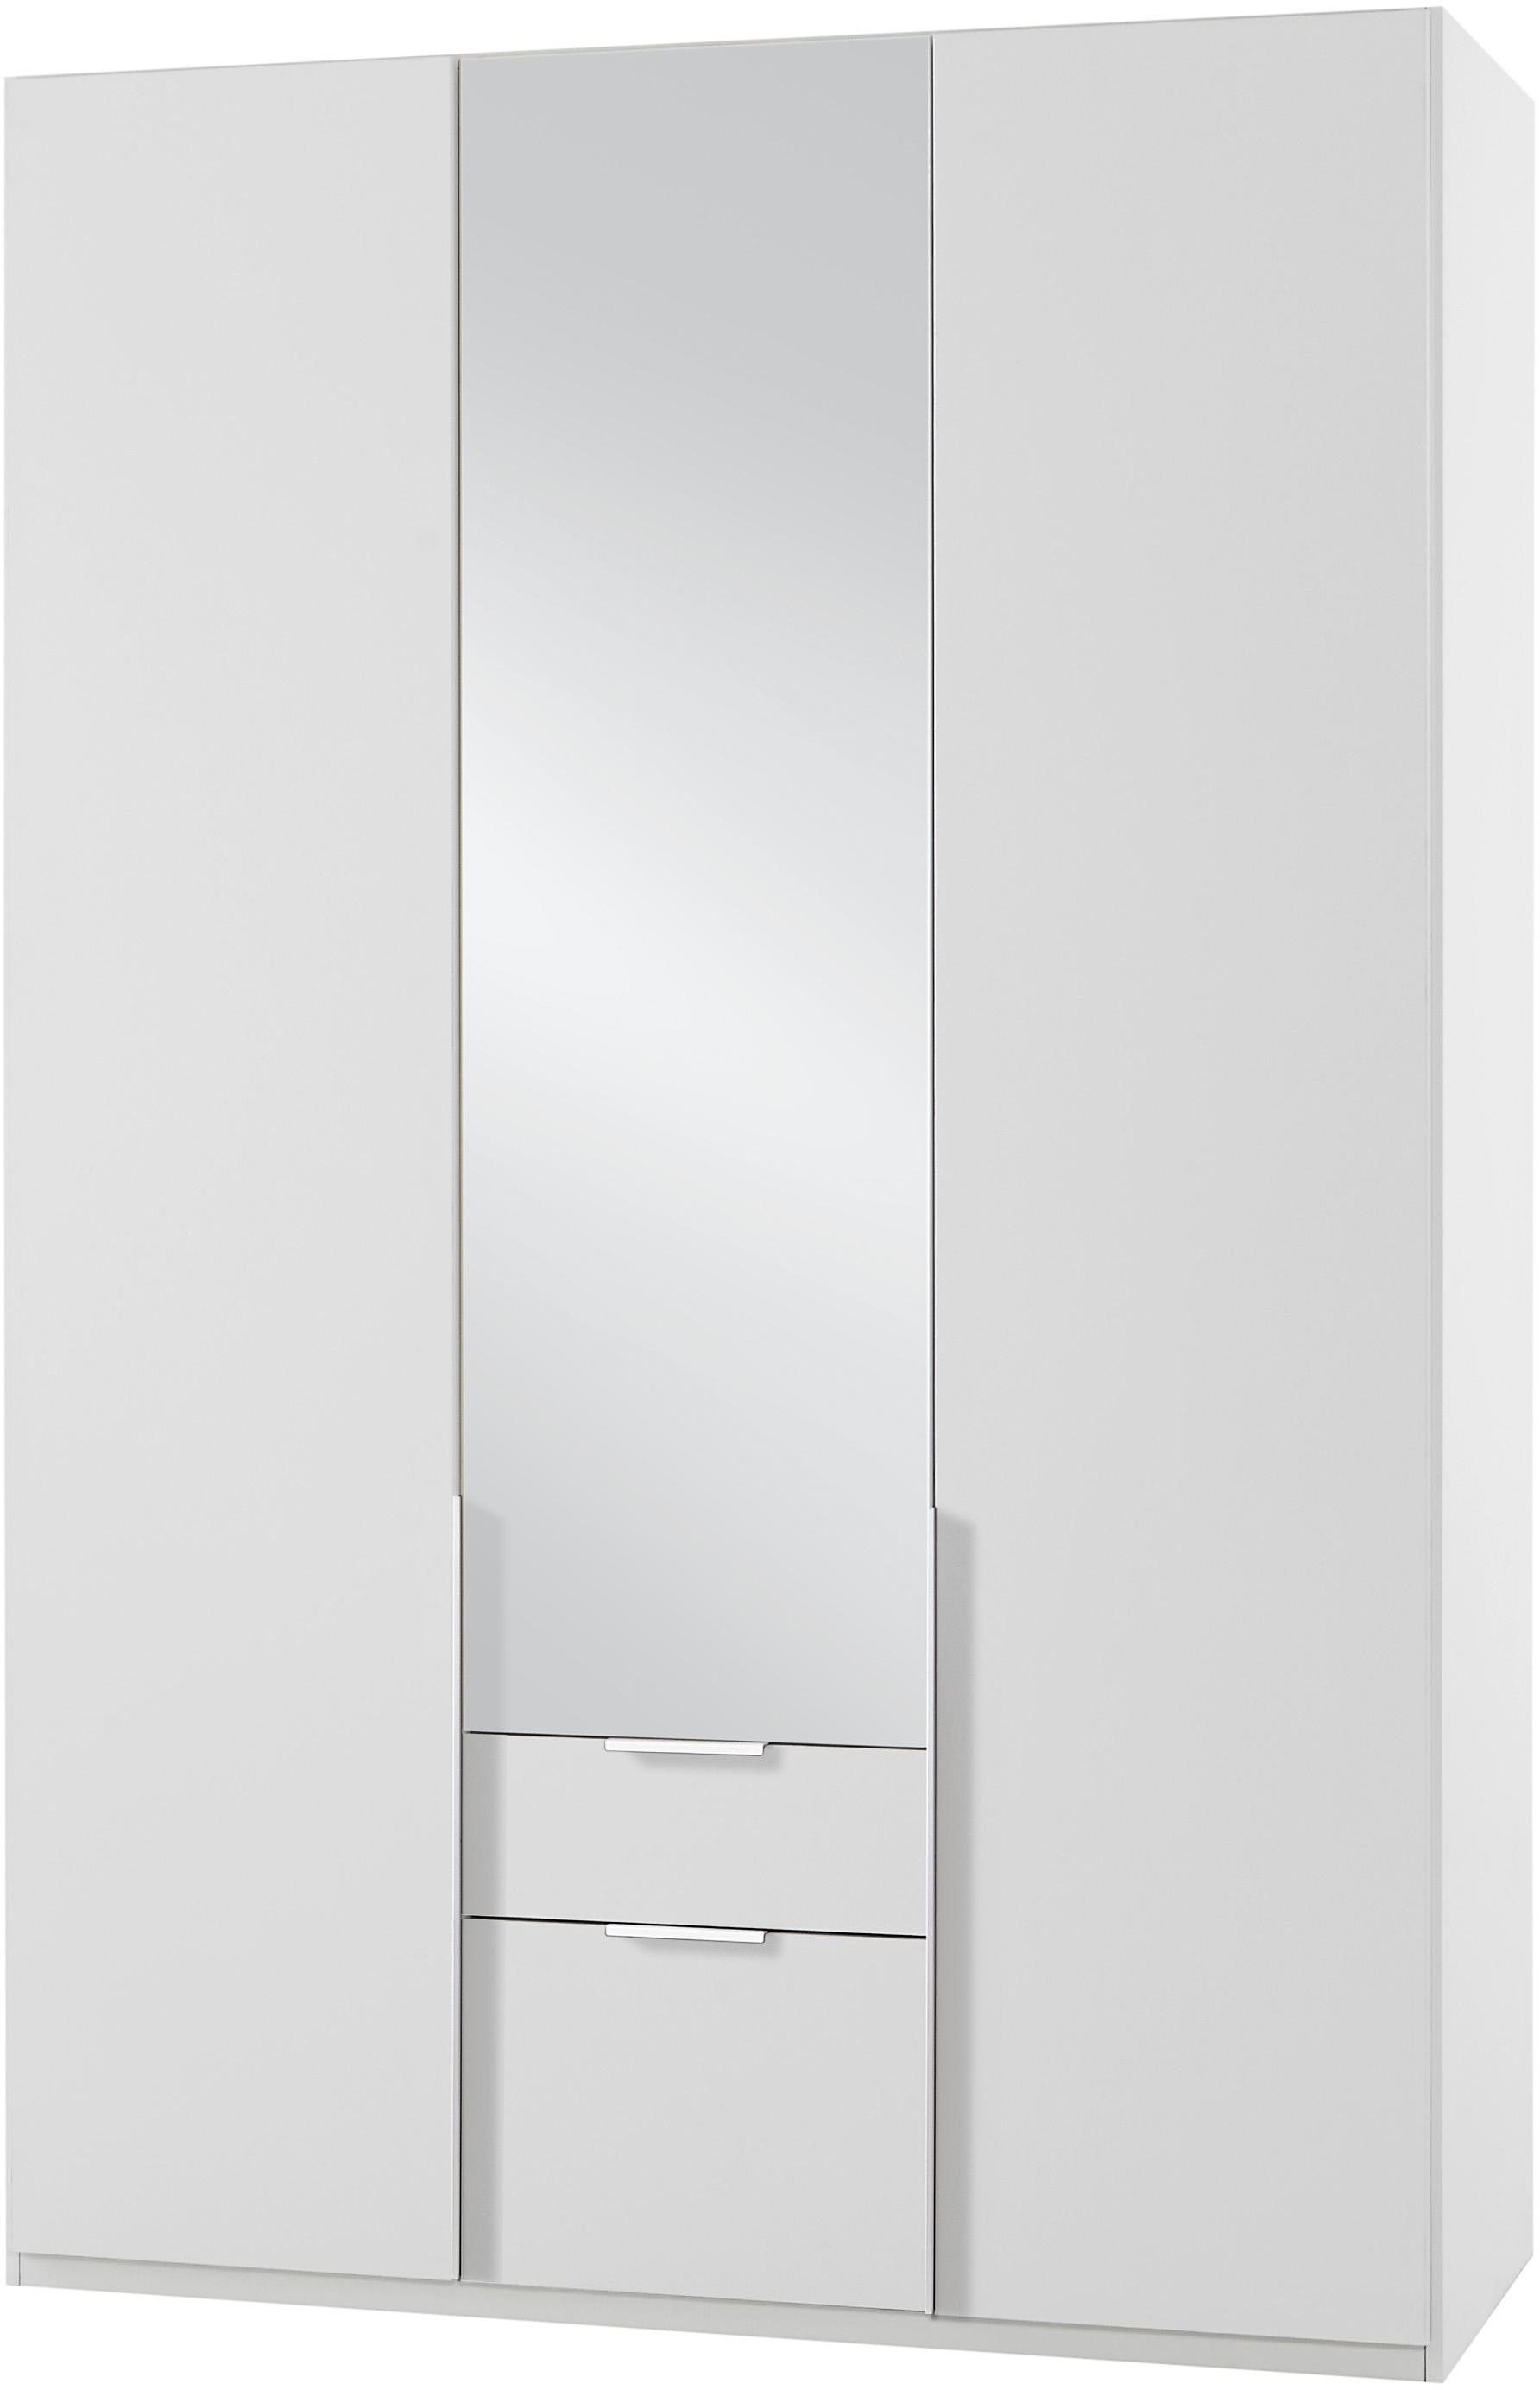 Wimex Kleiderschrank New York mit Spiegeltür weiß/Spiegel | Kleiderschränke